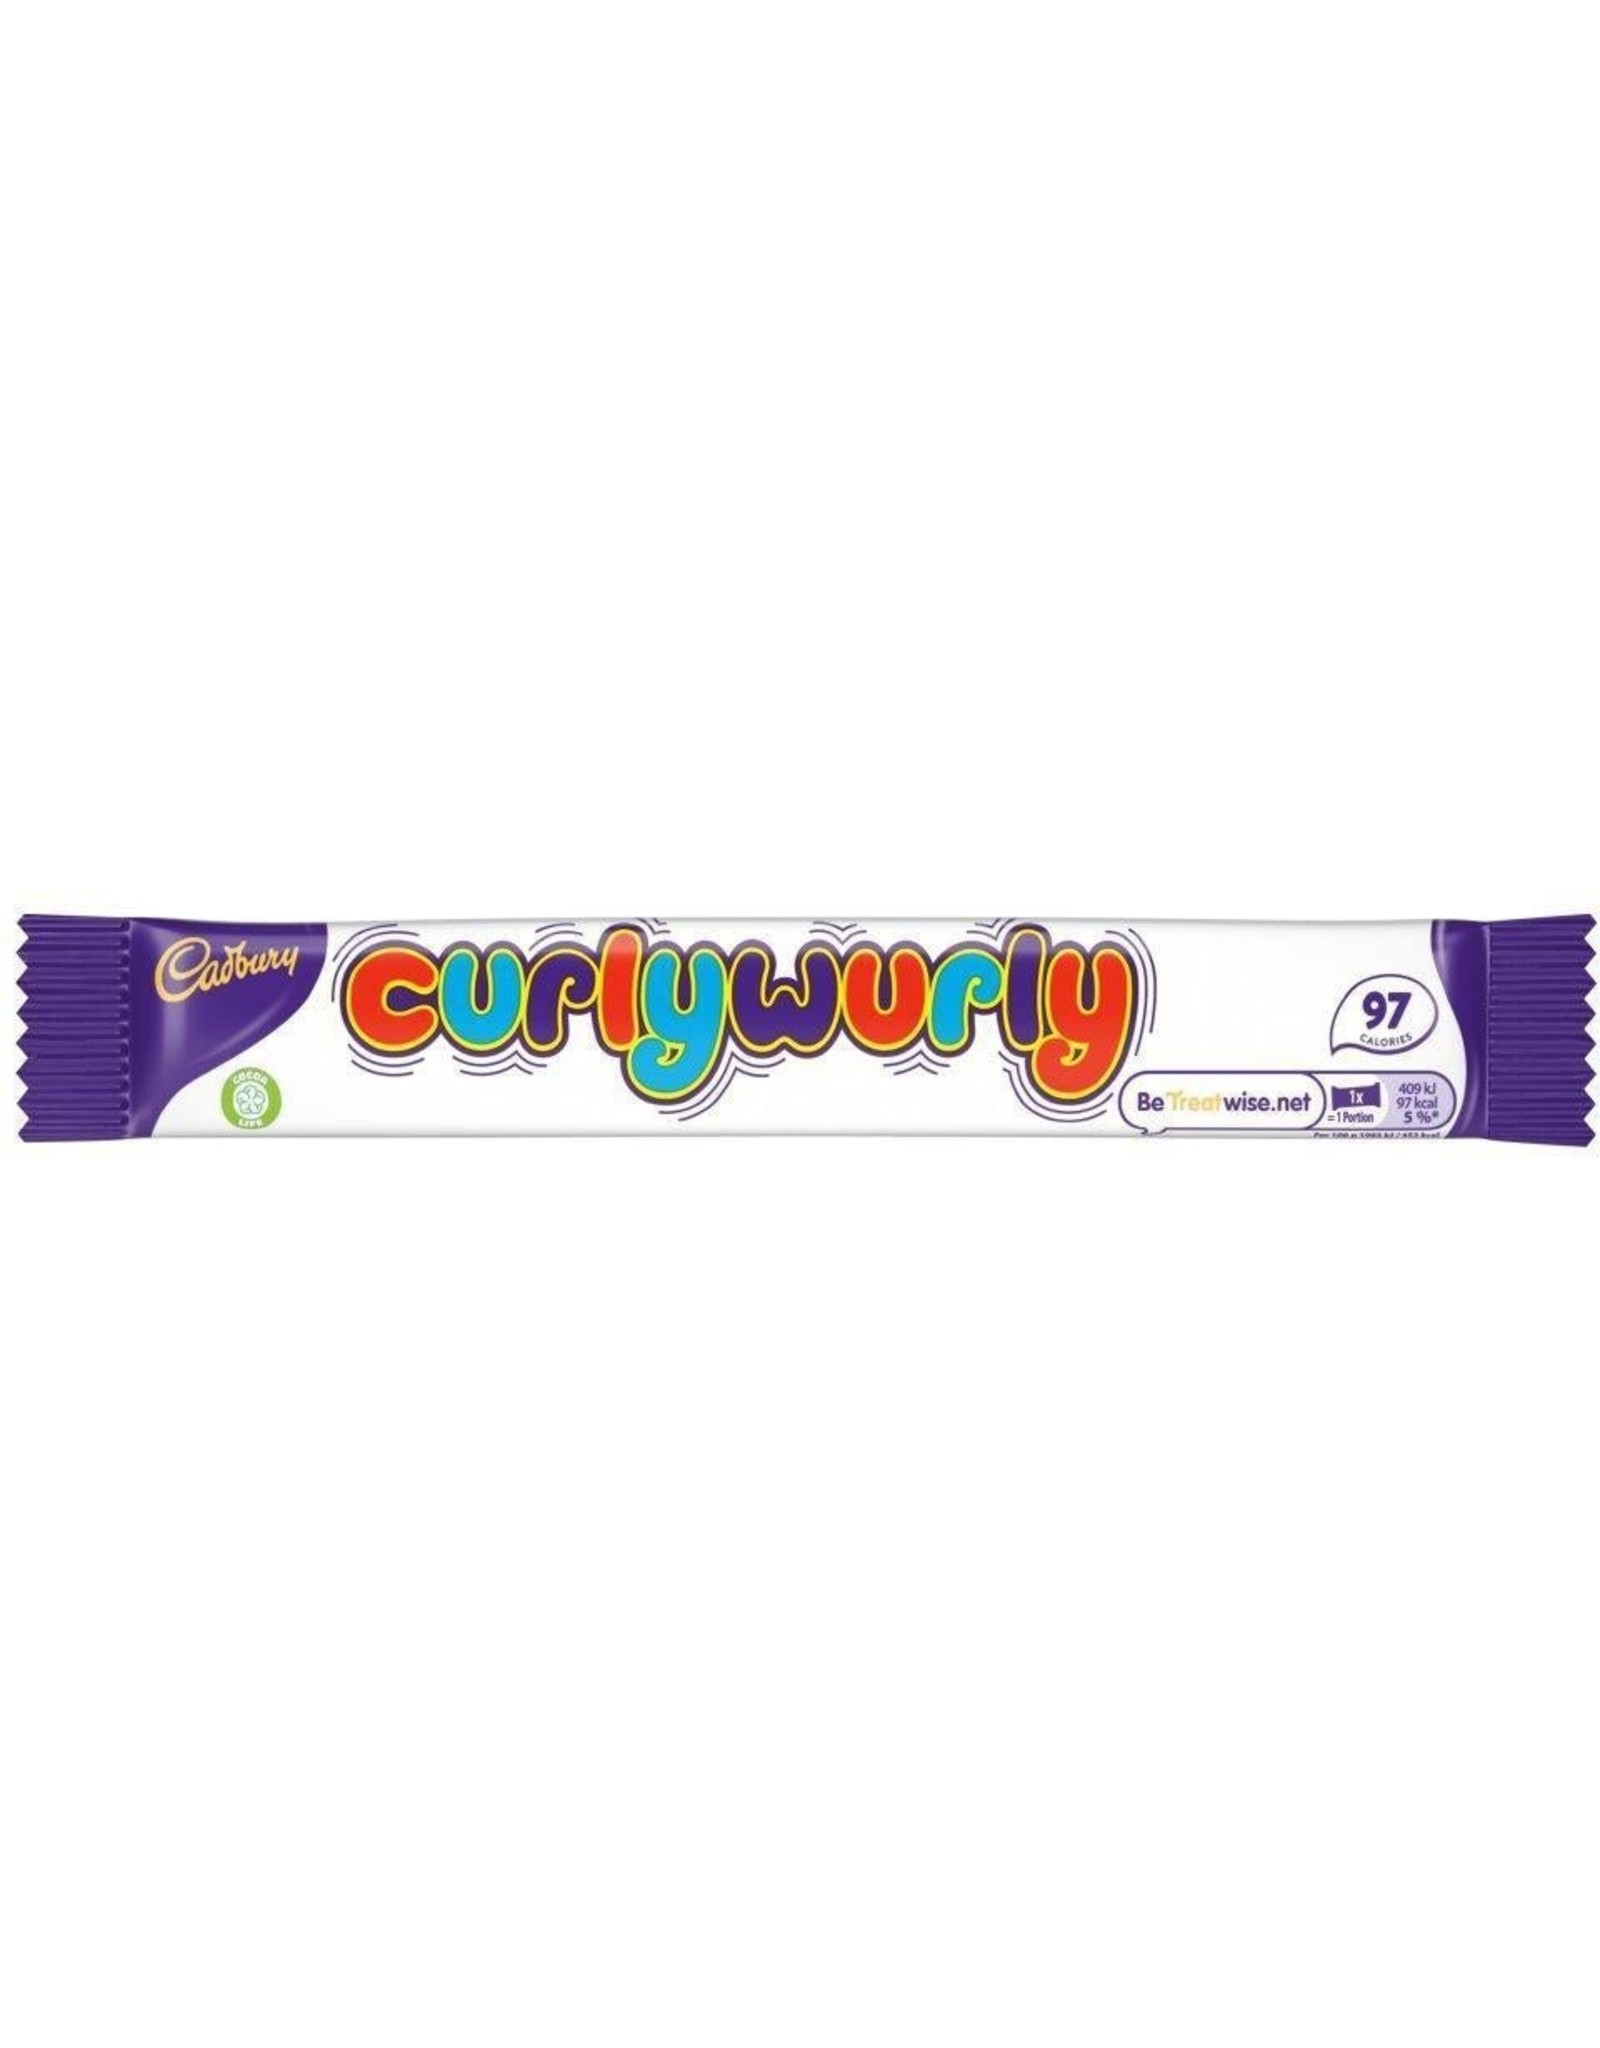 Cadbury Cadbury Curly Wurly (British)